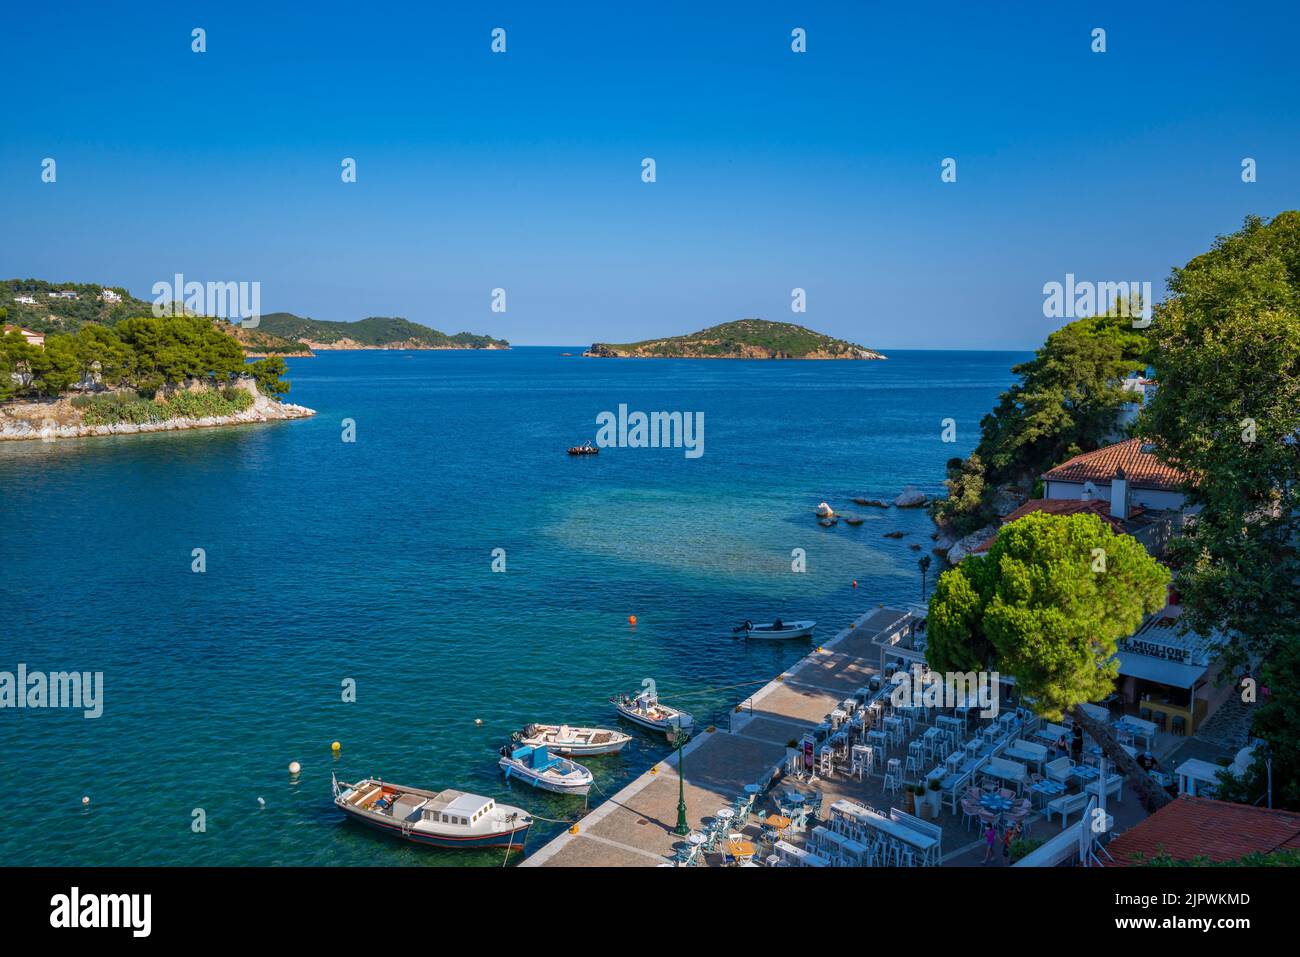 Vue sur les bateaux dans le Vieux Port par dessus, ville de Skiathos, île de Skiathos, îles Sporades, îles grecques, Grèce, Europe Banque D'Images